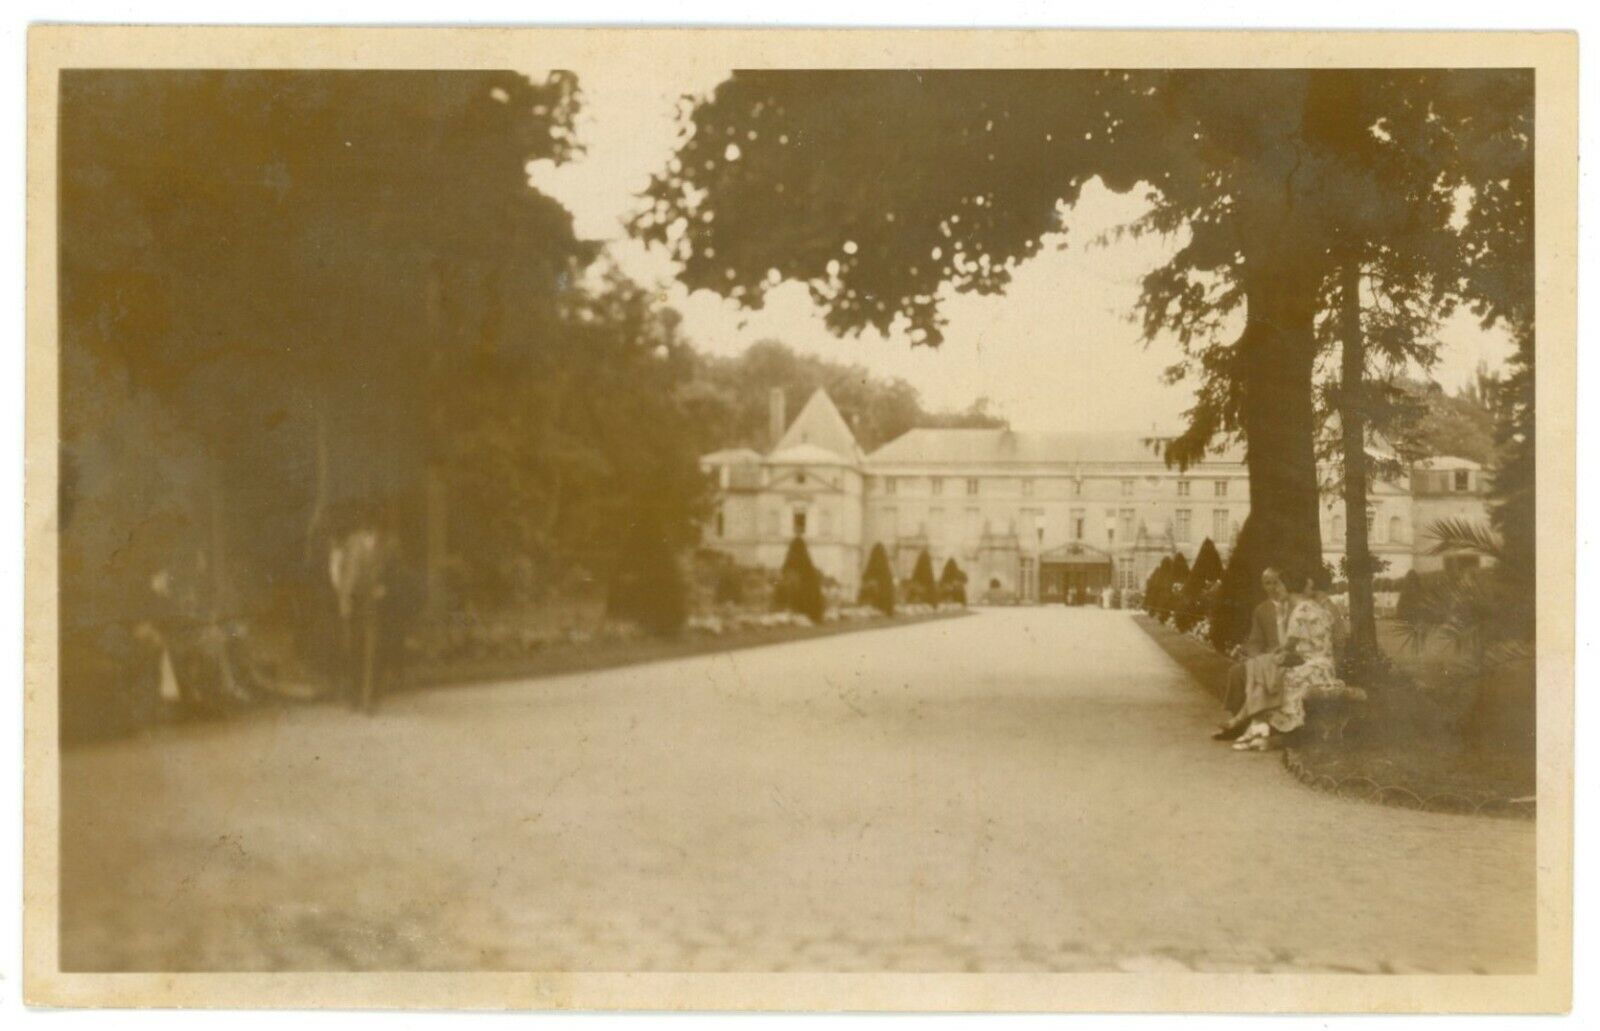 Chateau de Malmaison, Empress Joséphine Former Residence, Paris, France Postcard